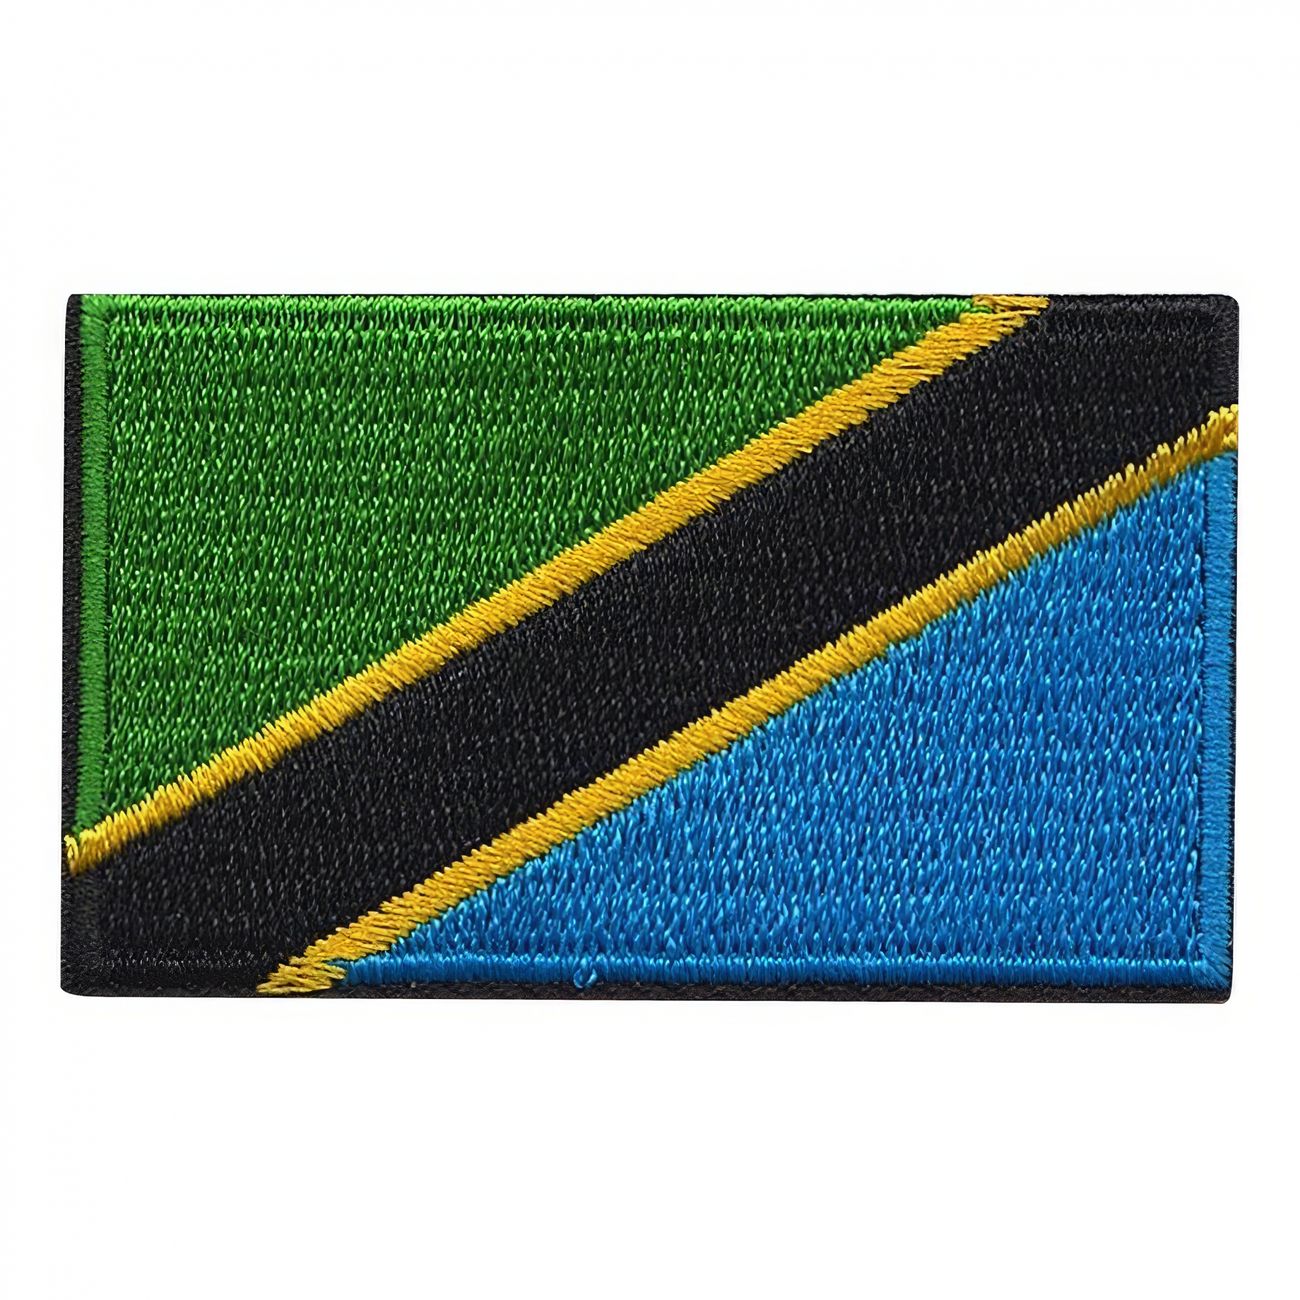 tygmarke-flagga-tanzania-94582-1